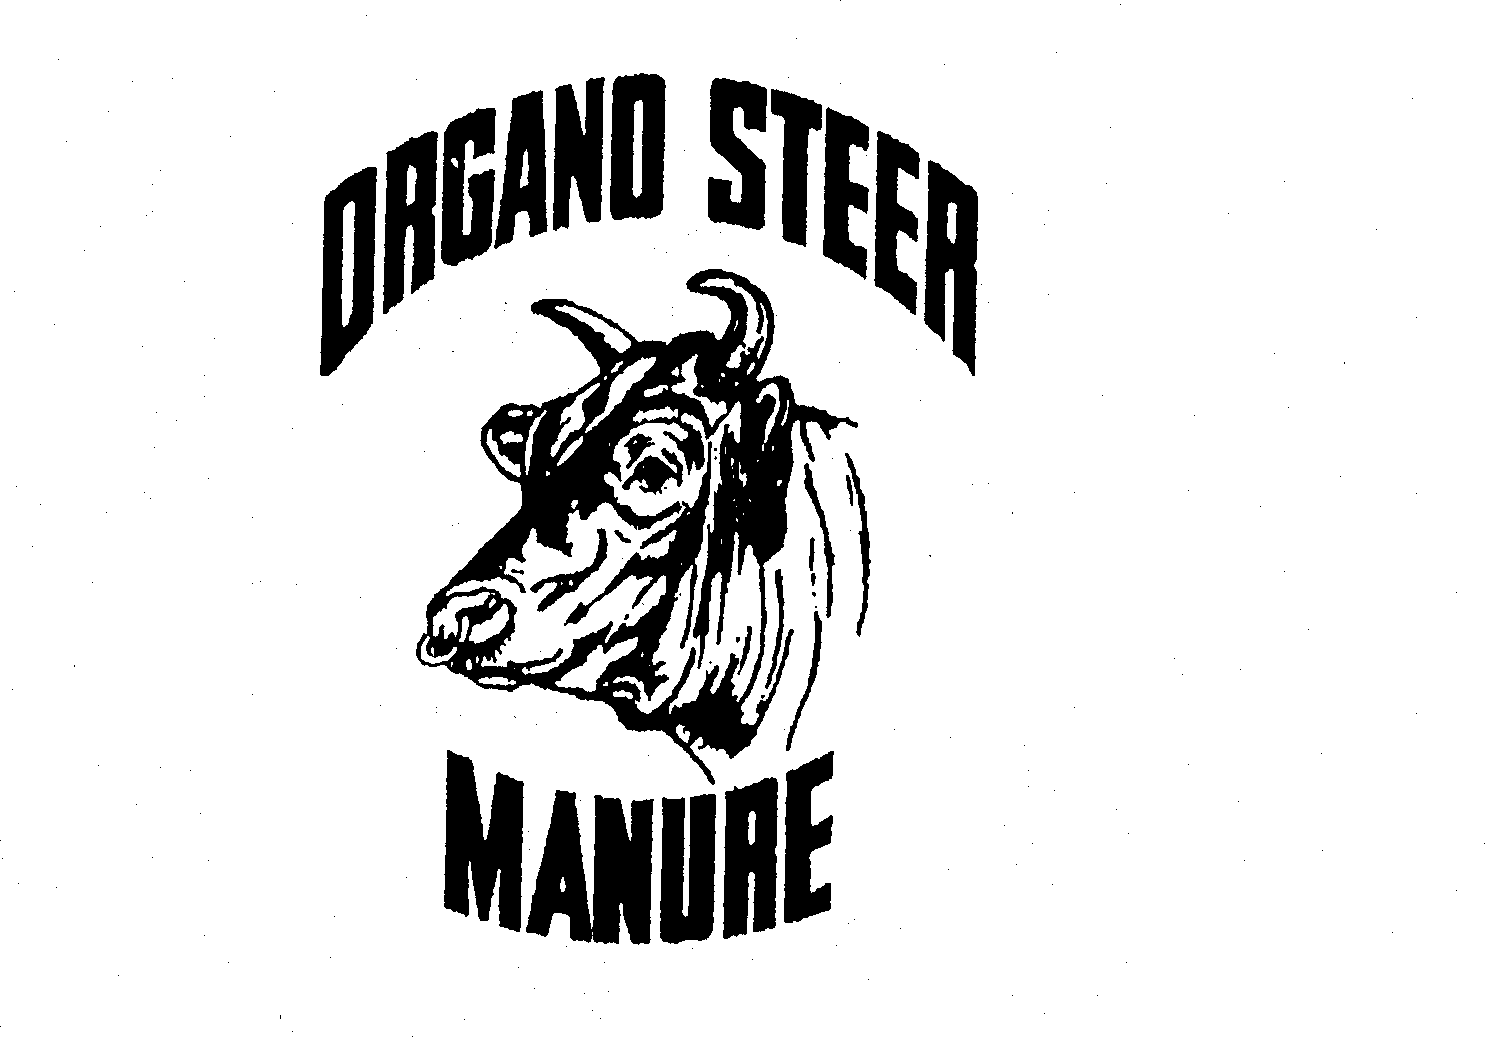  ORGANO STEER MANURE